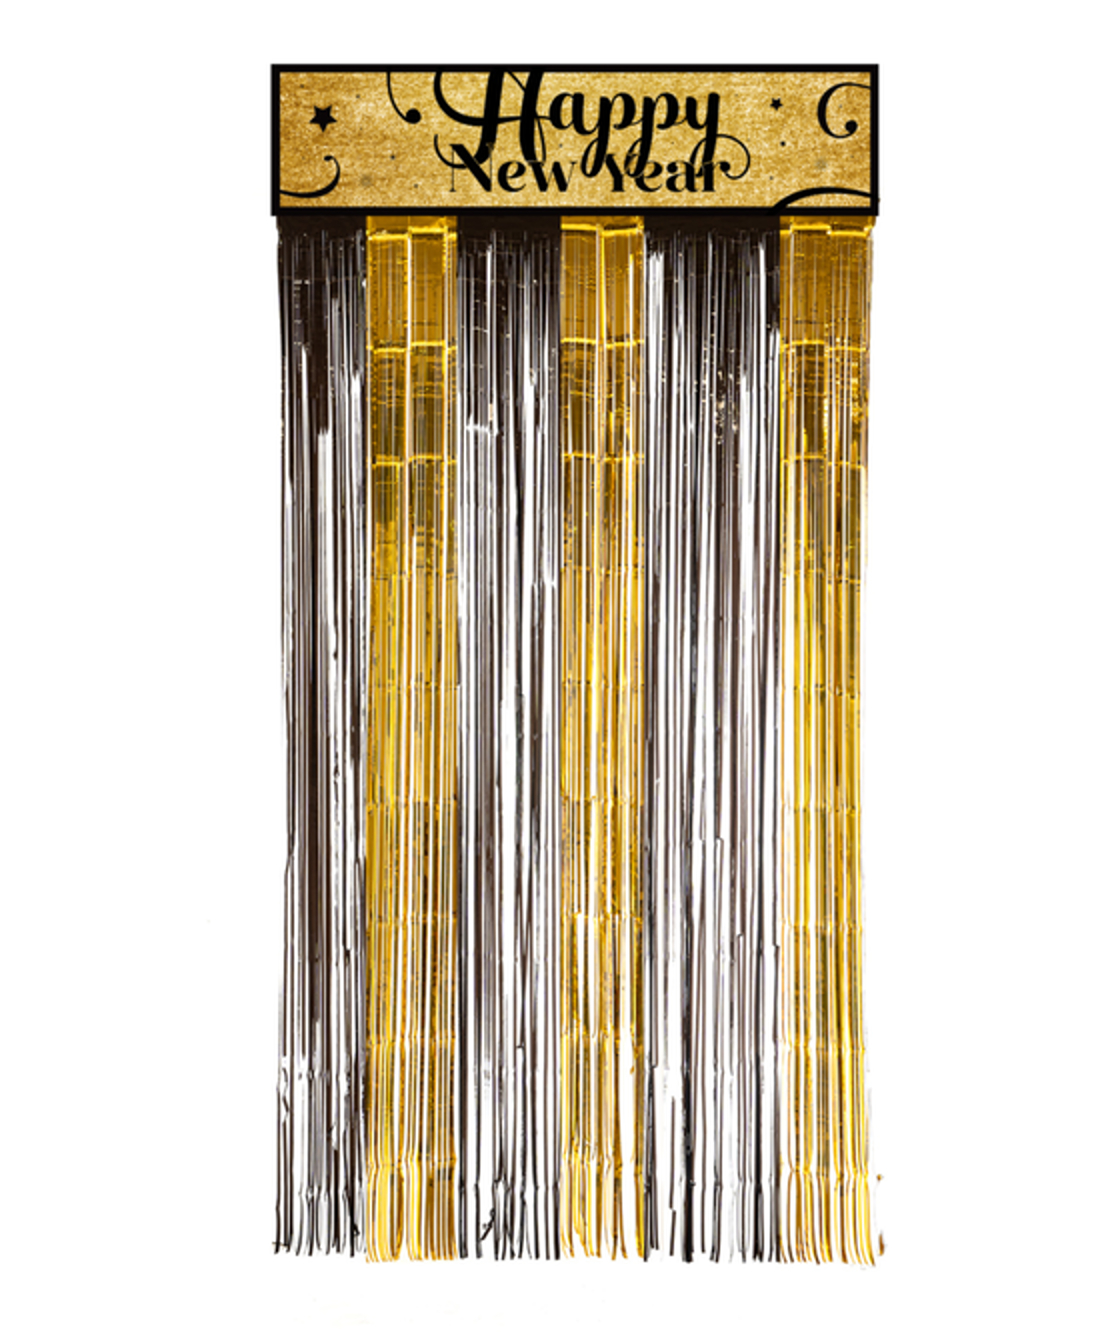 וילון שחור-זהב עם כרזה HAPPY NEW YEAR כ - 1*2 מטר